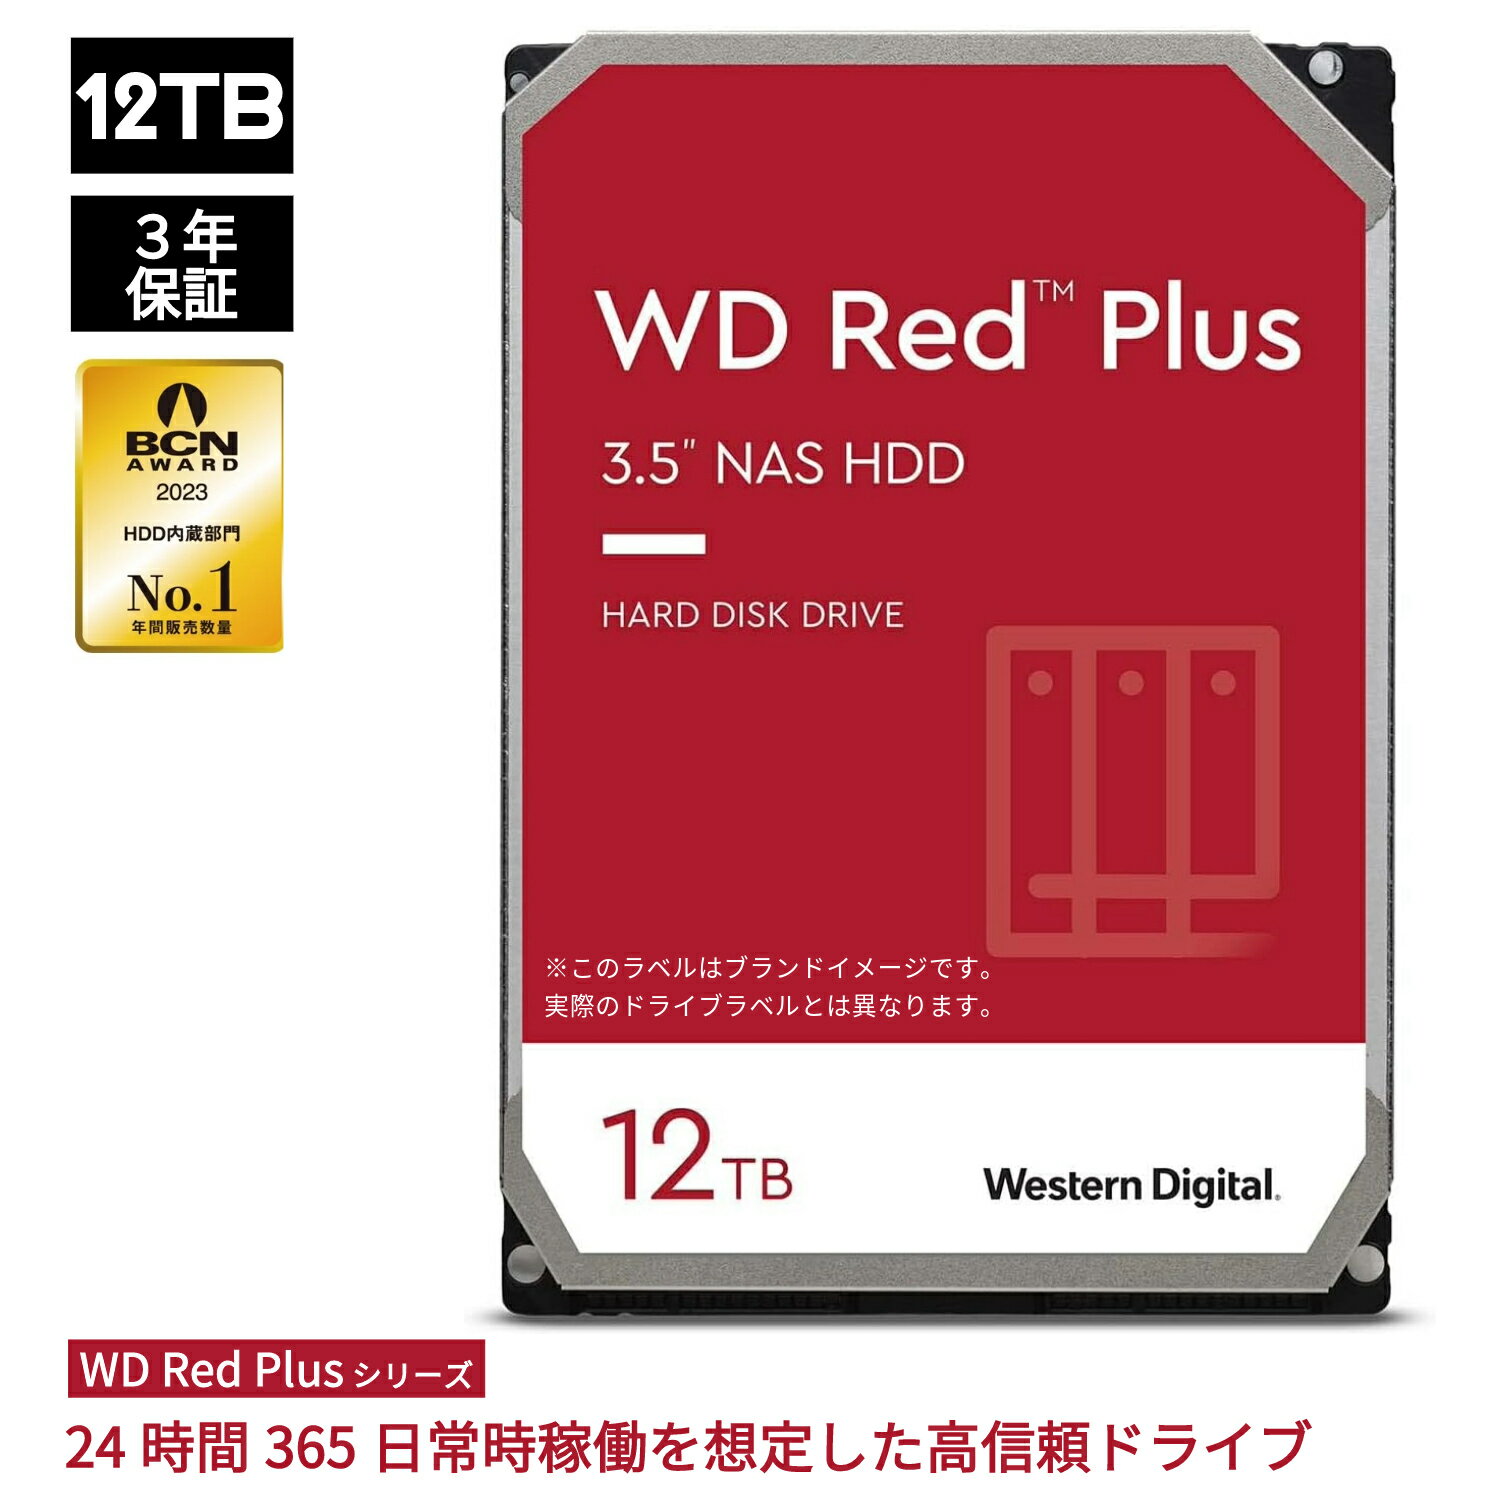 【国内正規流通品】Western Digital ウエスタンデジタル WD Red Plus 内蔵 HDD ハードディスク 12TB CMR 3.5インチ SATA 7200rpm キャッシュ256MB NAS メーカー保証3年 WD120EFBX 内蔵hdd バックアップ 用 パソコン ハードディスクドライブ ec 大容量 PCパーツ